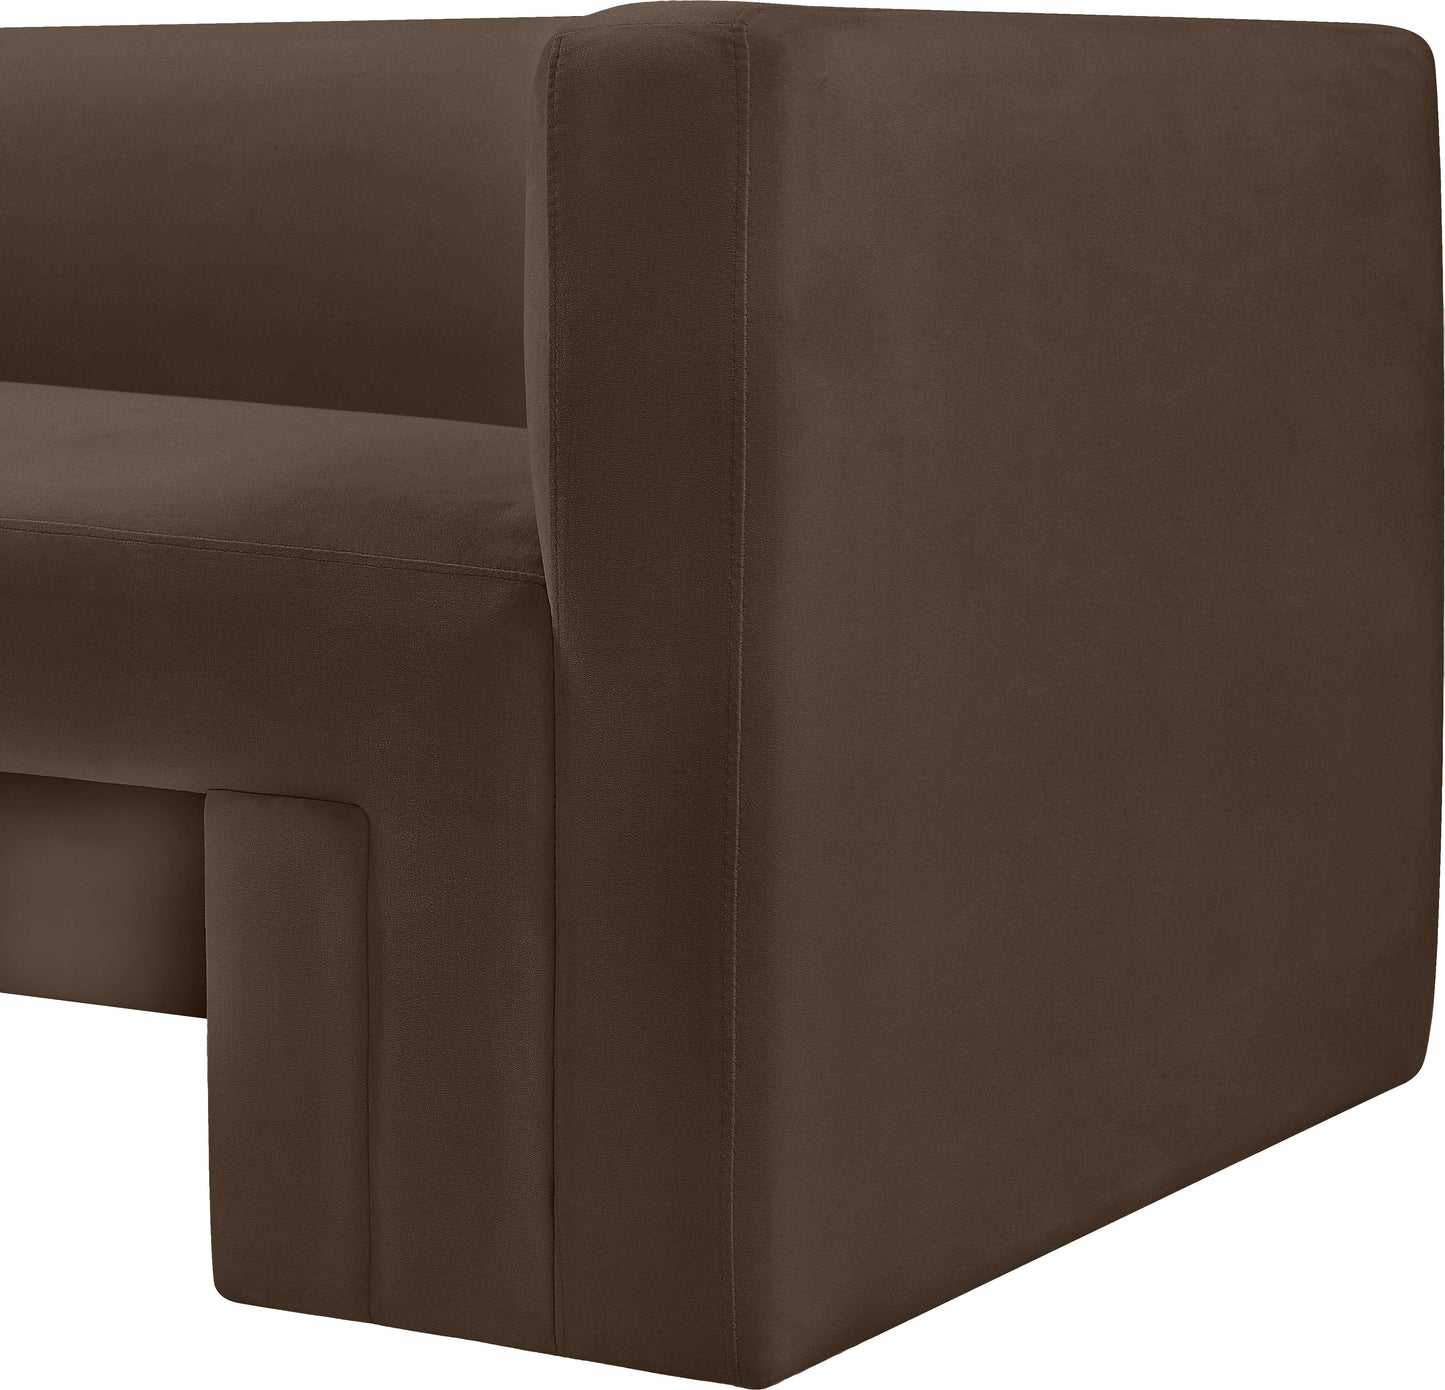 woodford brown velvet chair c